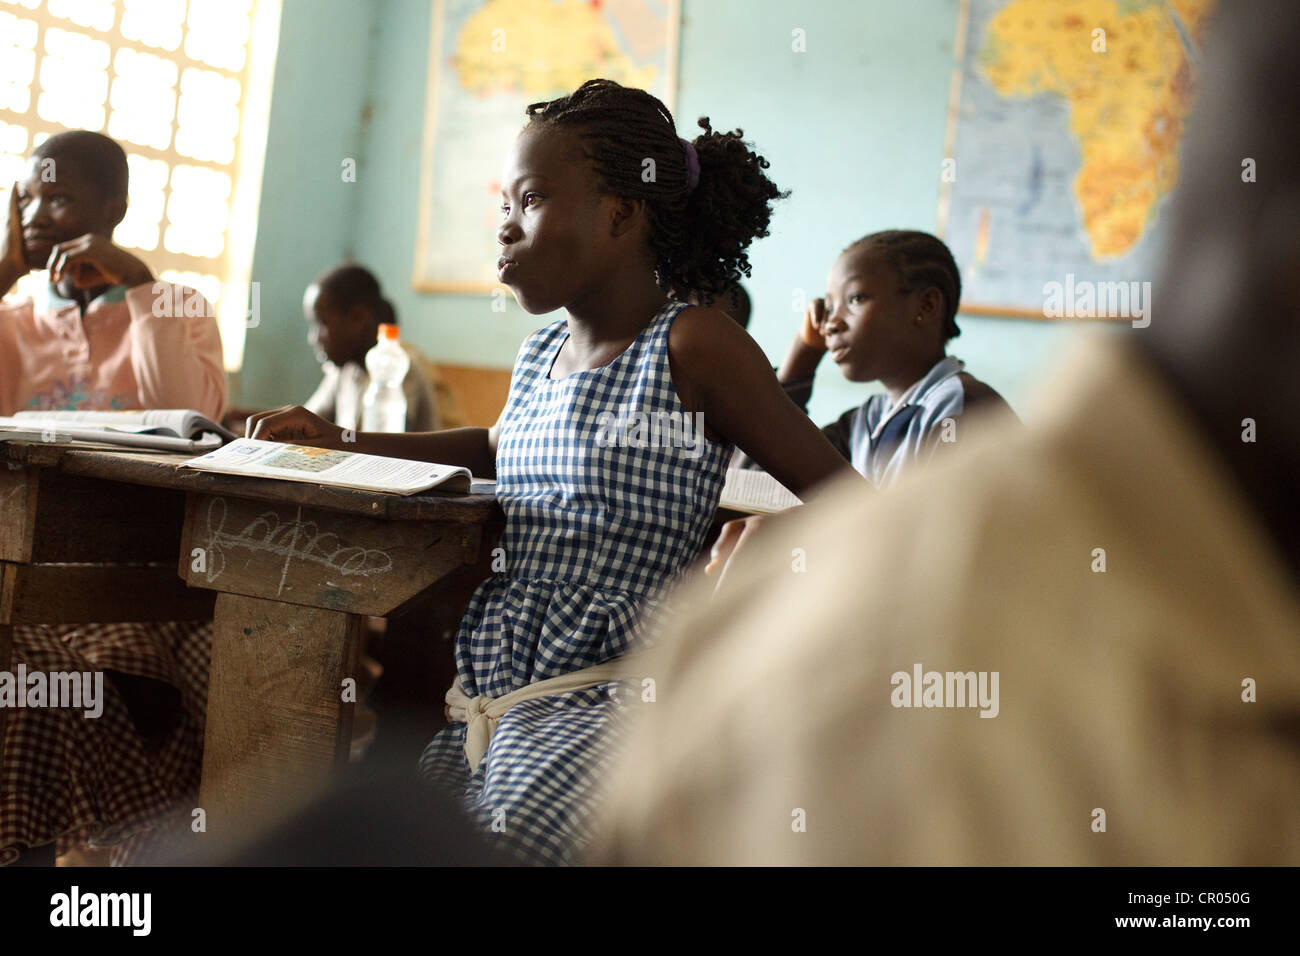 Children attend class at the groupe scolaire Bondoukou Est primary school in Bondoukou, Zanzan region, Cote d'Ivoire on Thursday Stock Photo